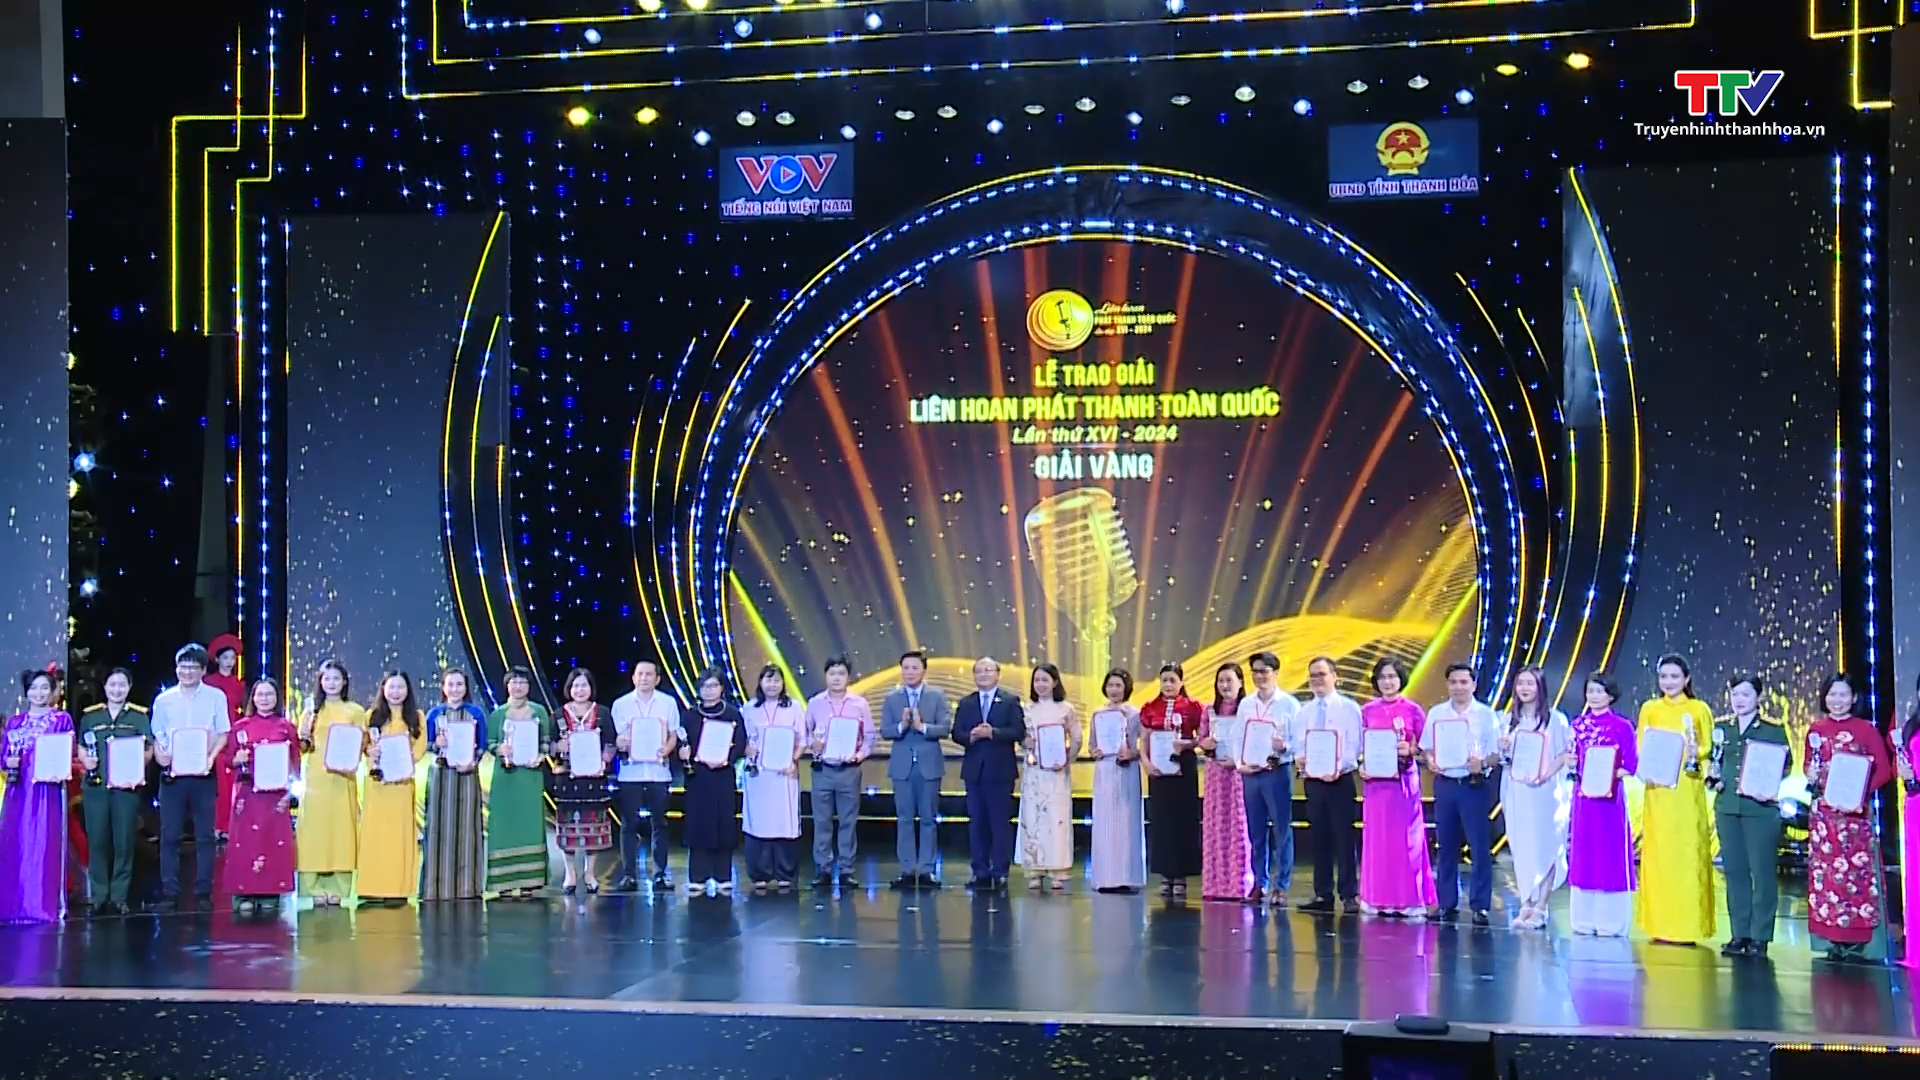 Bế mạc Liên hoan Phát thanh toàn quốc lần thứ XVI tại Thanh Hóa: Ấn tượng và giàu cảm xúc- Ảnh 3.